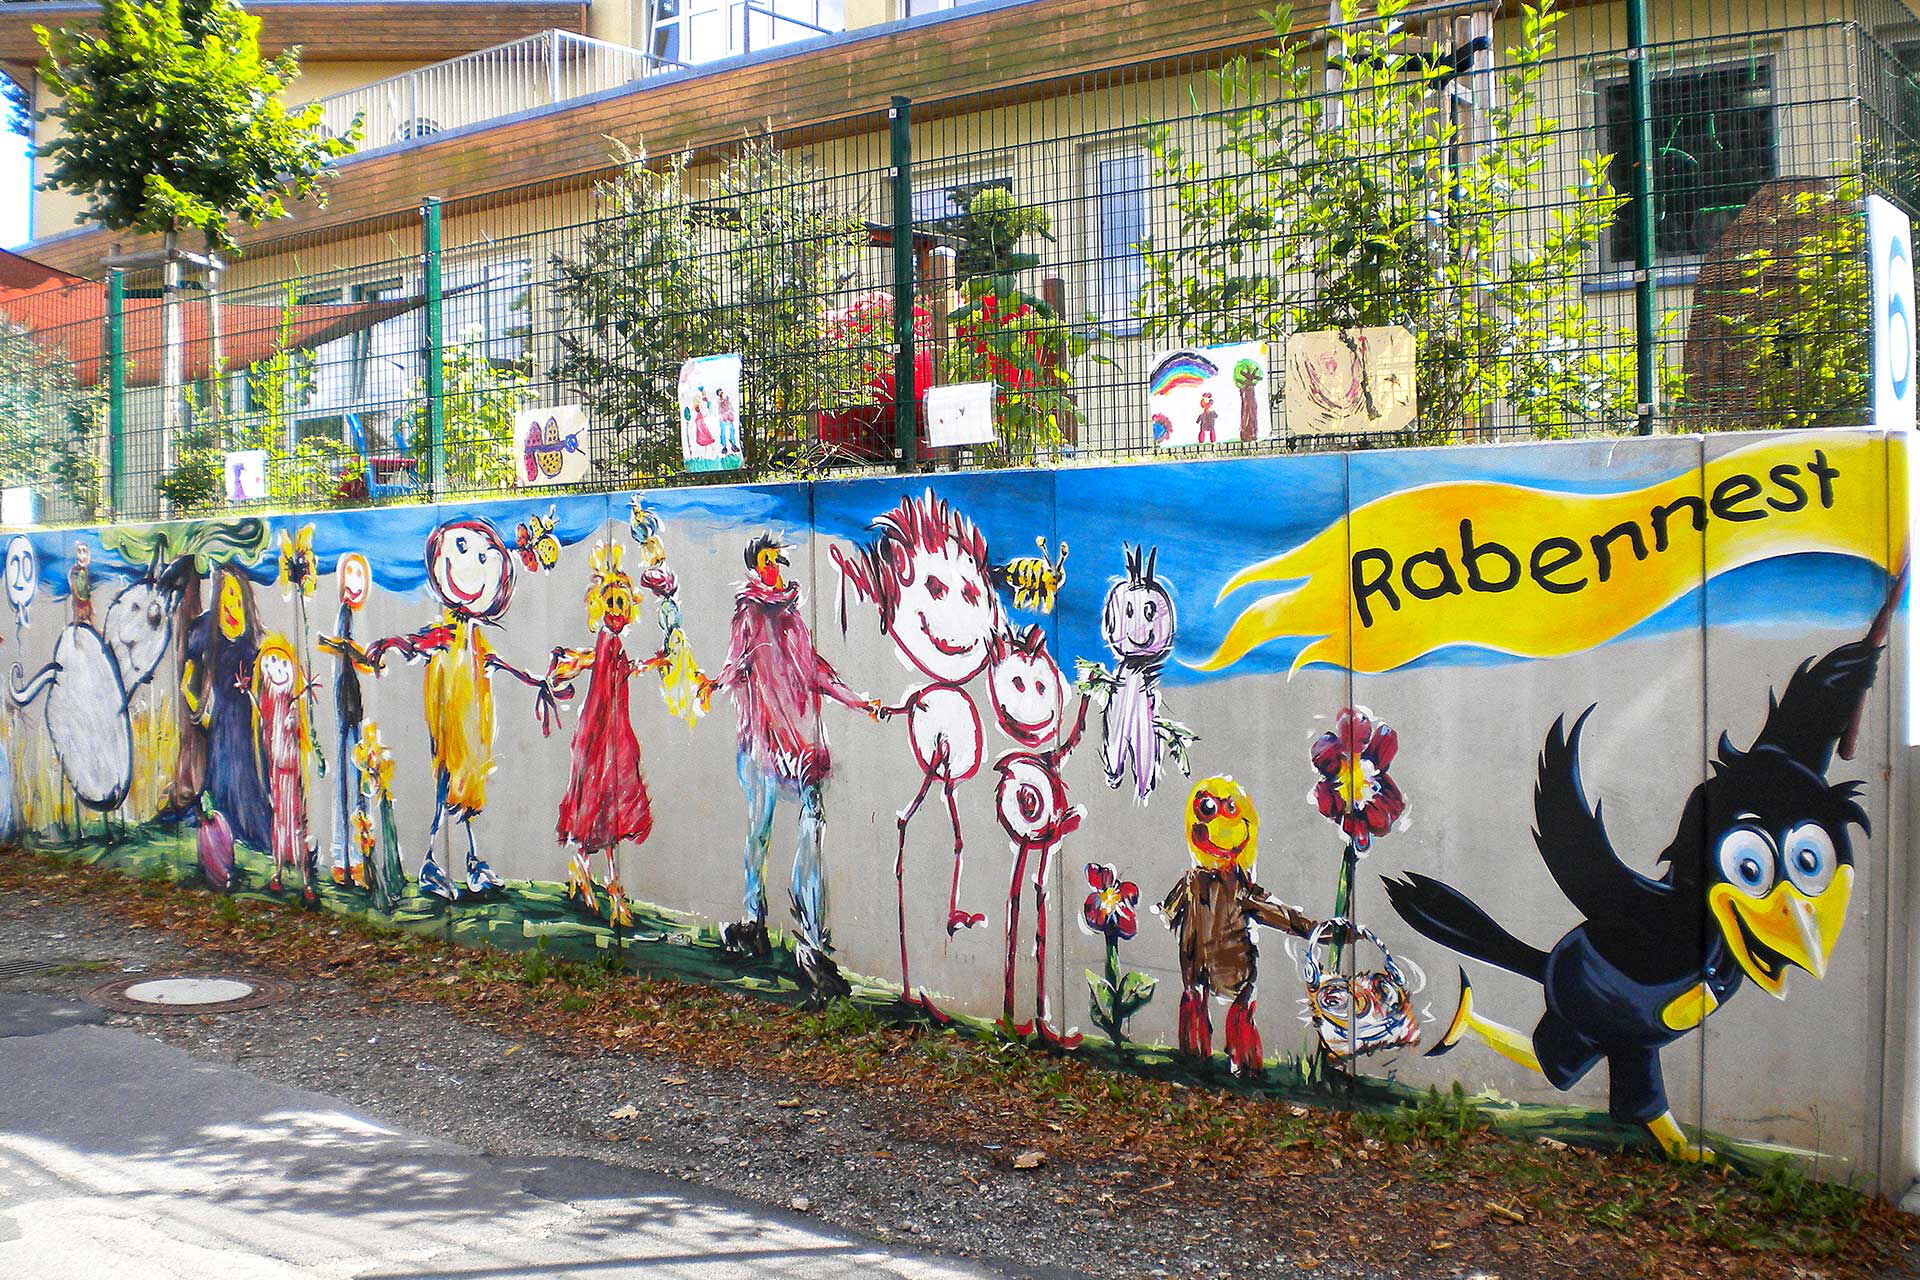 Die bunte Stützmauer zur Kieselhausenstraße ist mit vielen bunten Kinderbildern gestaltet worden. Ein Rabe hält eine gelbe Fahne mit der Aufschrift Rabennest in der Hand.